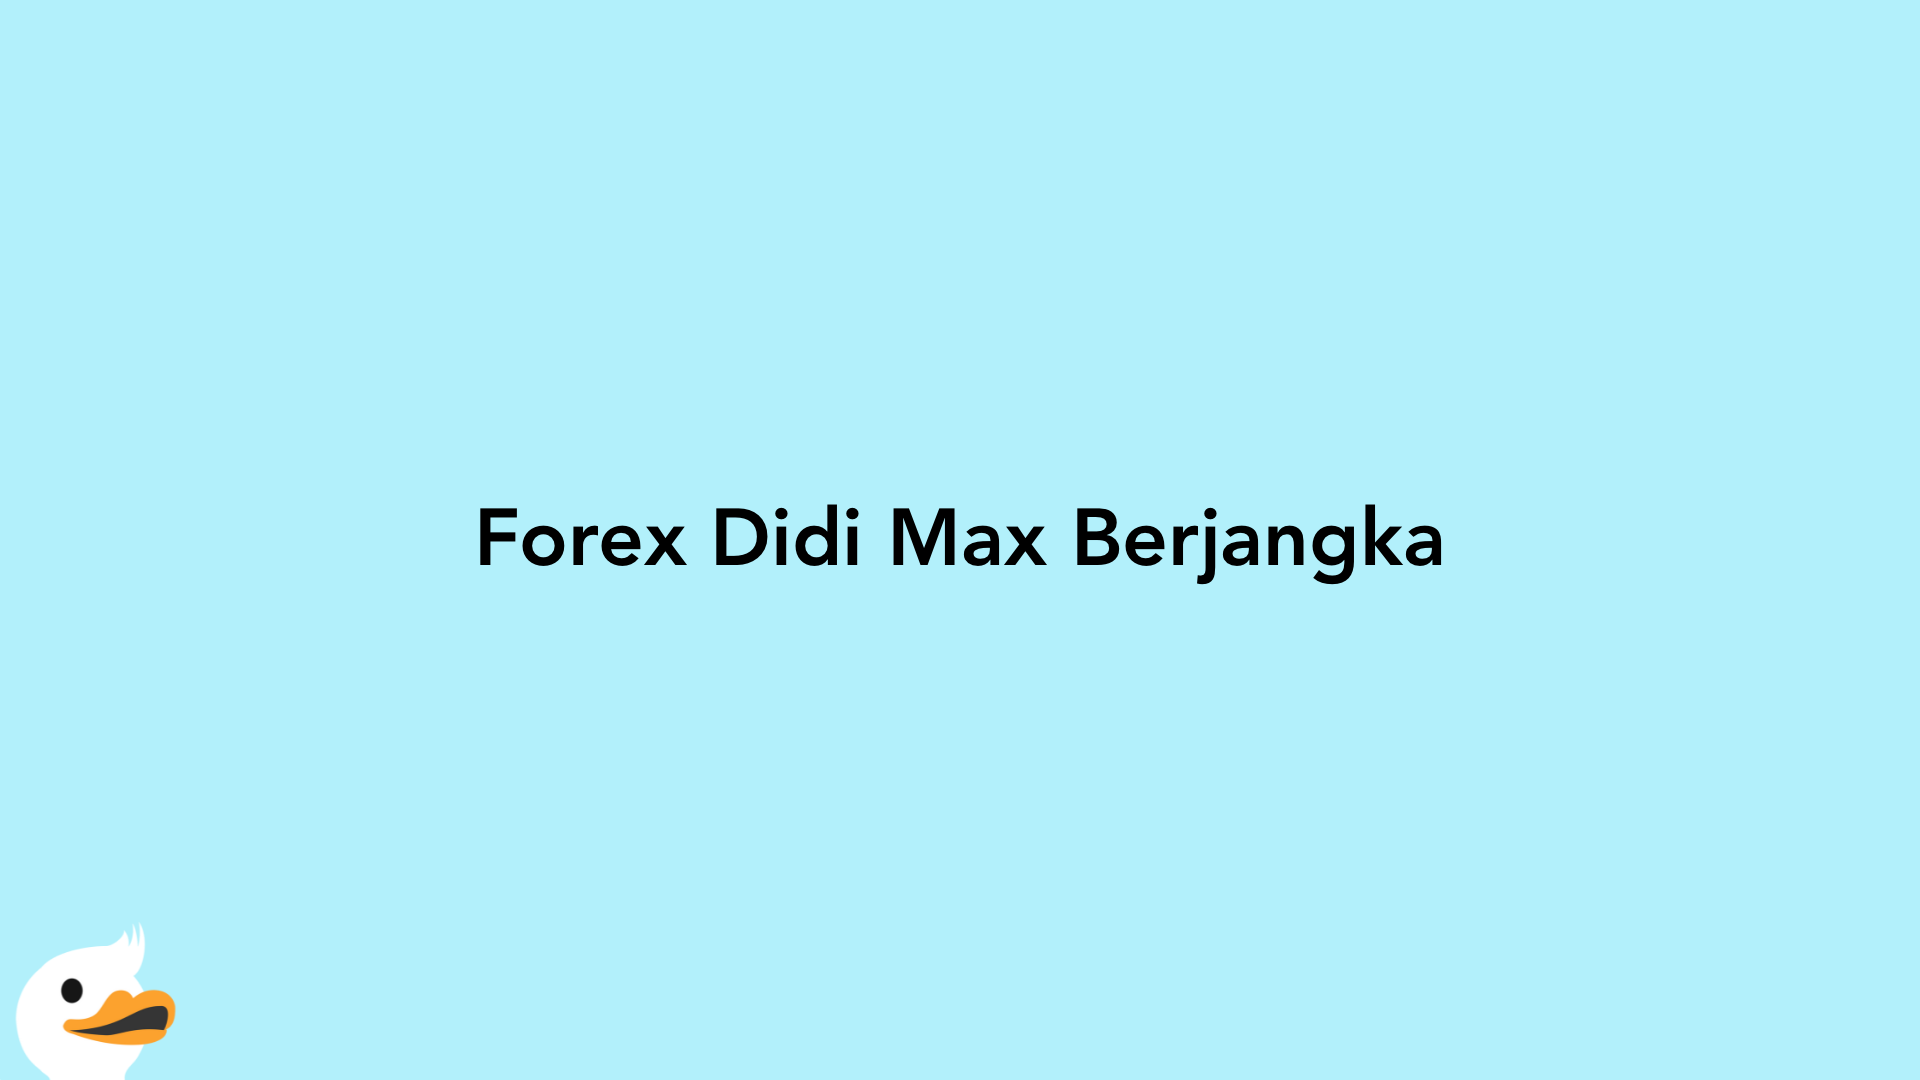 Forex Didi Max Berjangka